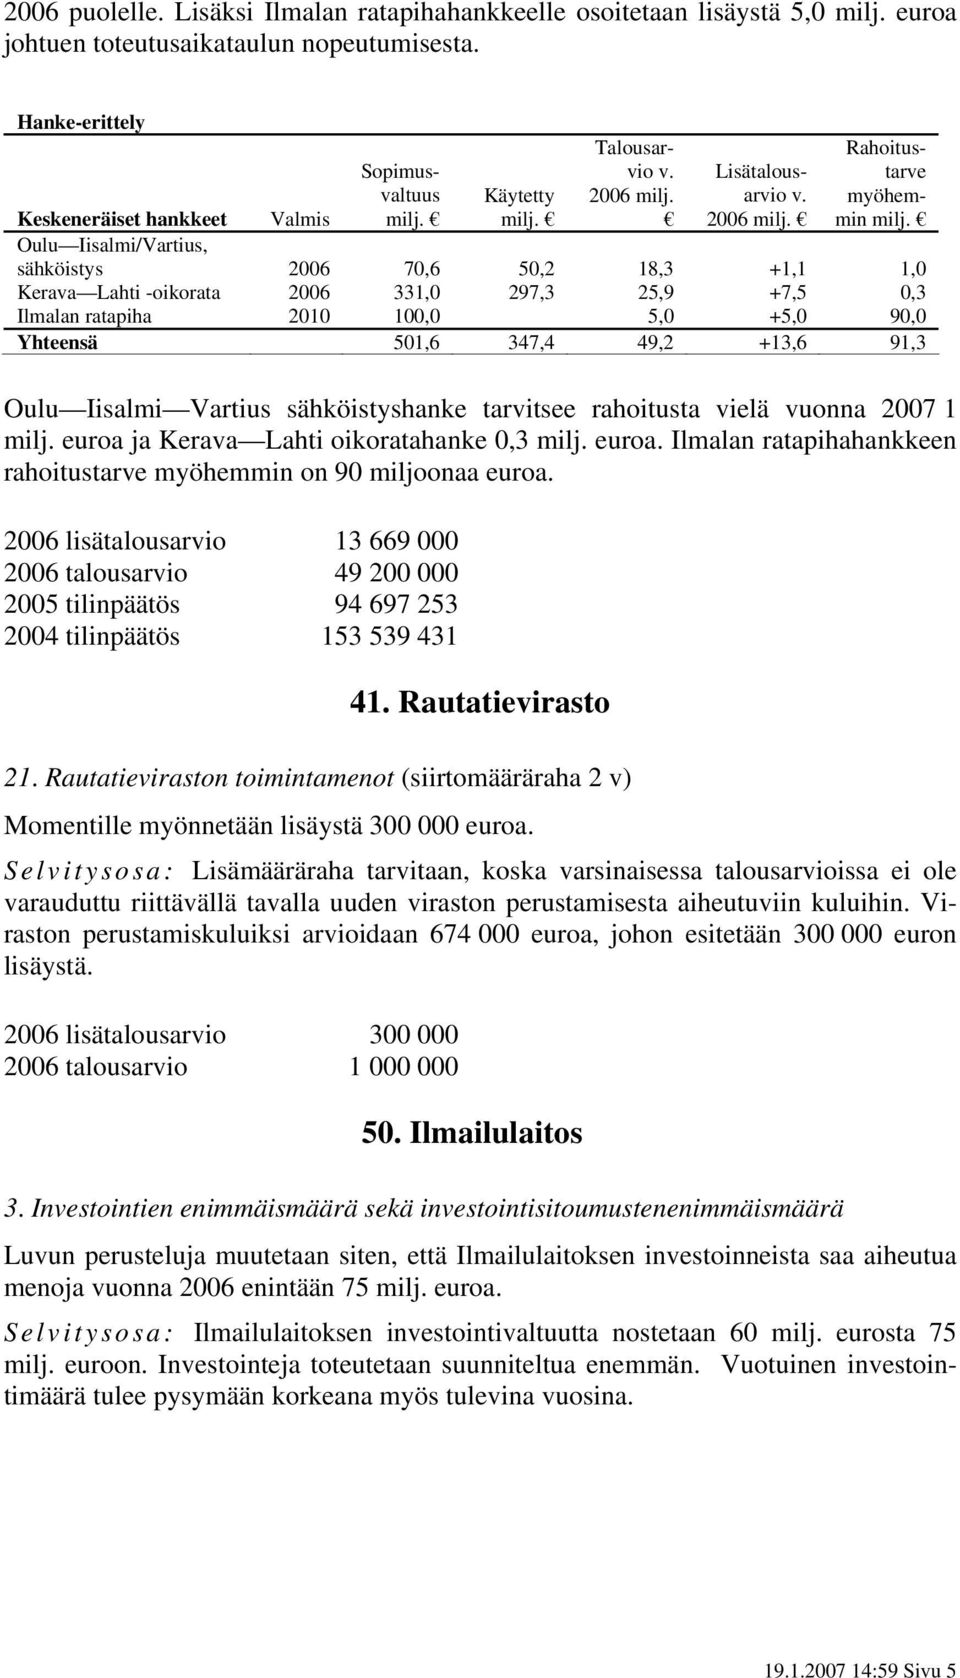 2006 Rahoitustarve myöhemmin Keskeneräiset hankkeet Valmis Oulu Iisalmi/Vartius, sähköistys 2006 70,6 50,2 18,3 +1,1 1,0 Kerava Lahti -oikorata 2006 331,0 297,3 25,9 +7,5 0,3 Ilmalan ratapiha 2010